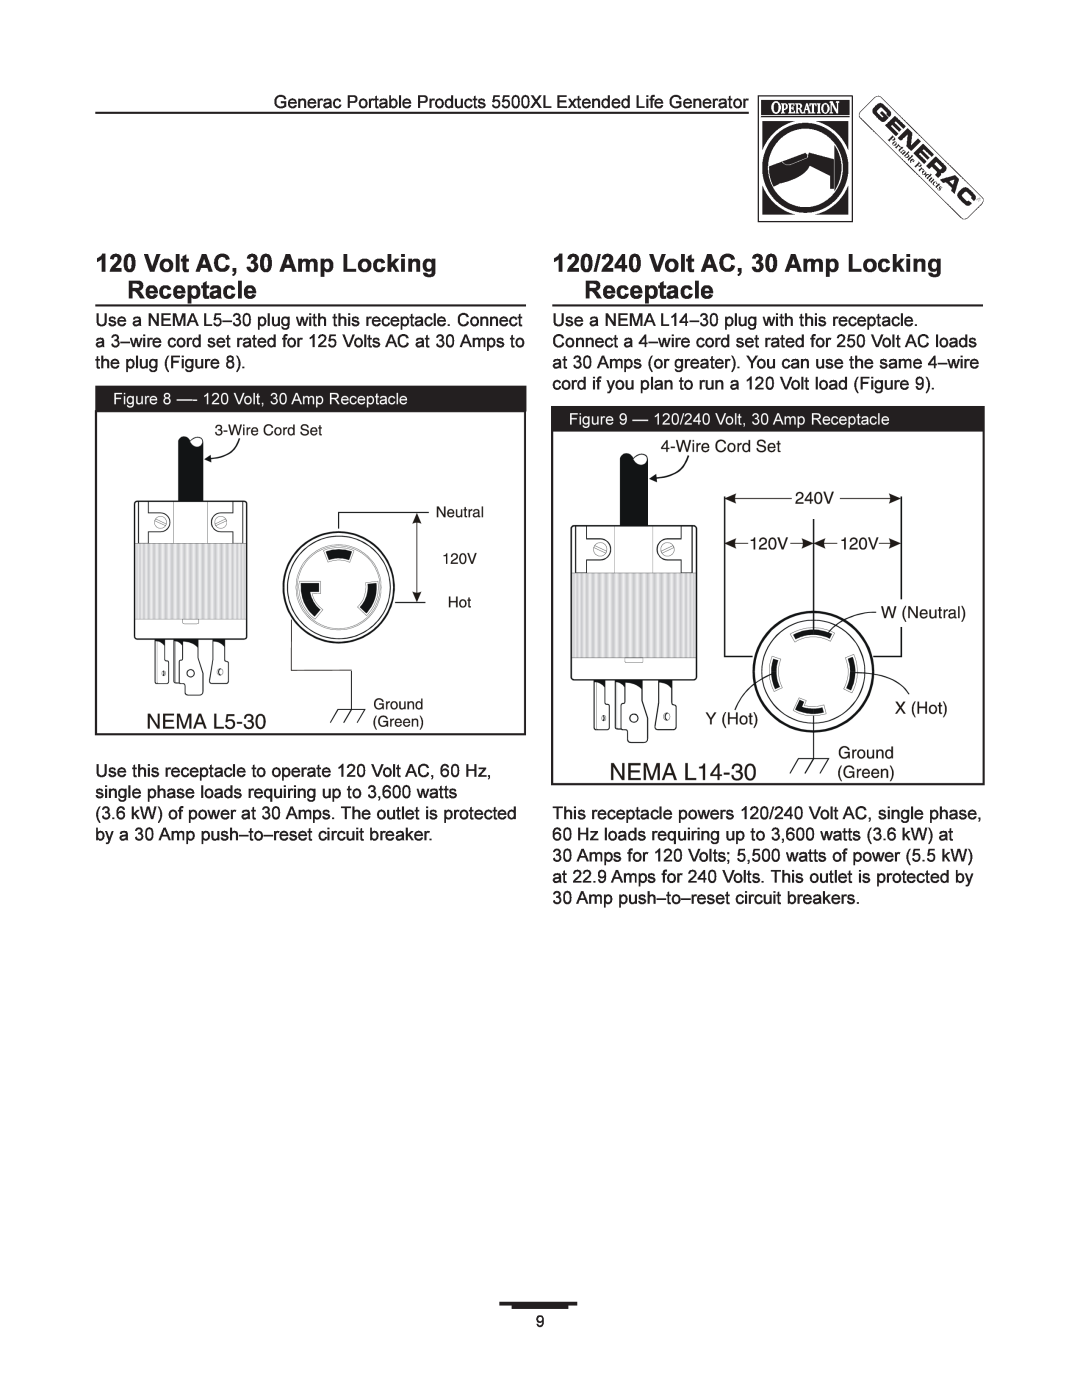 Generac 5500XL manual 120/240 Volt AC, 30 Amp Locking Receptacle, 120 Volt, 30 Amp Receptacle 